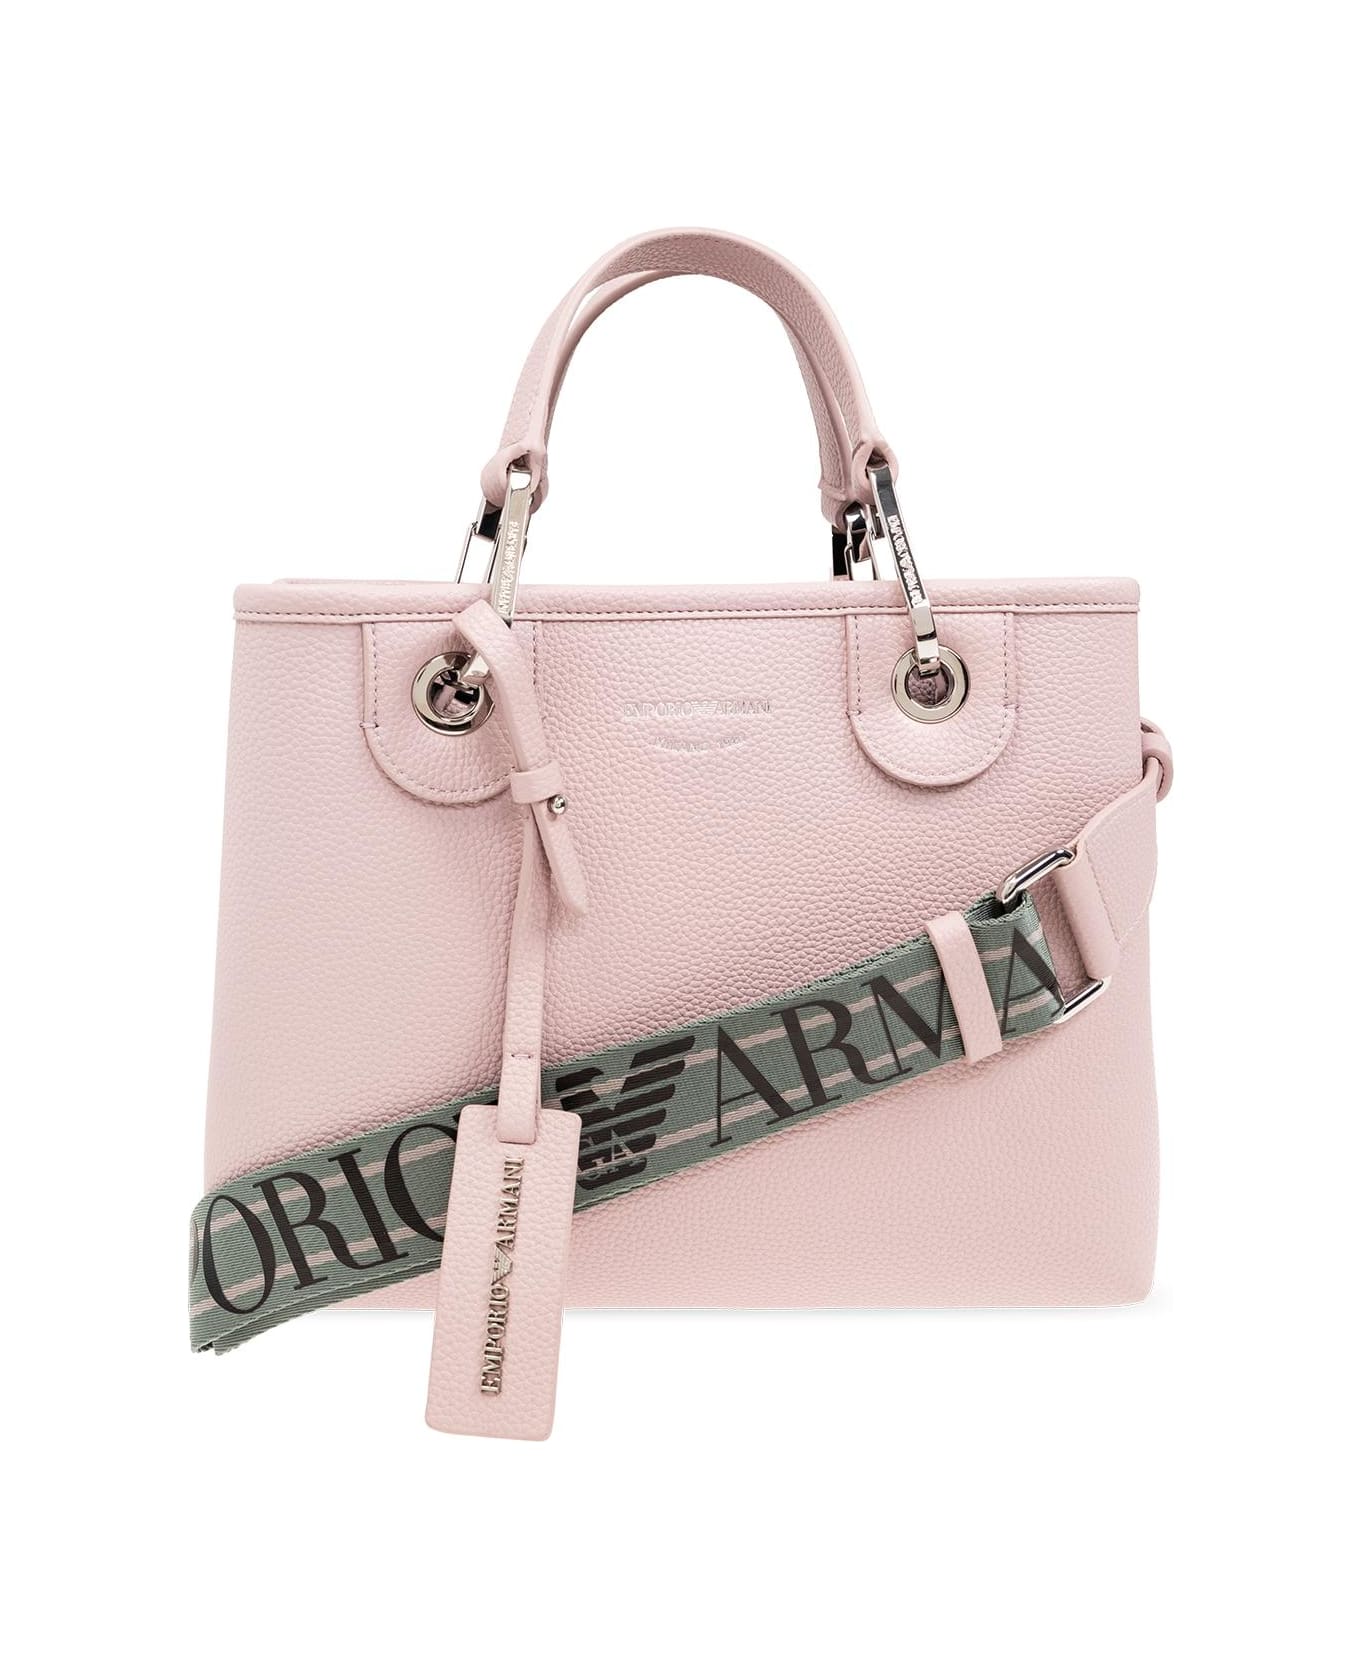 Emporio Armani Shopper Bag - Pink トートバッグ